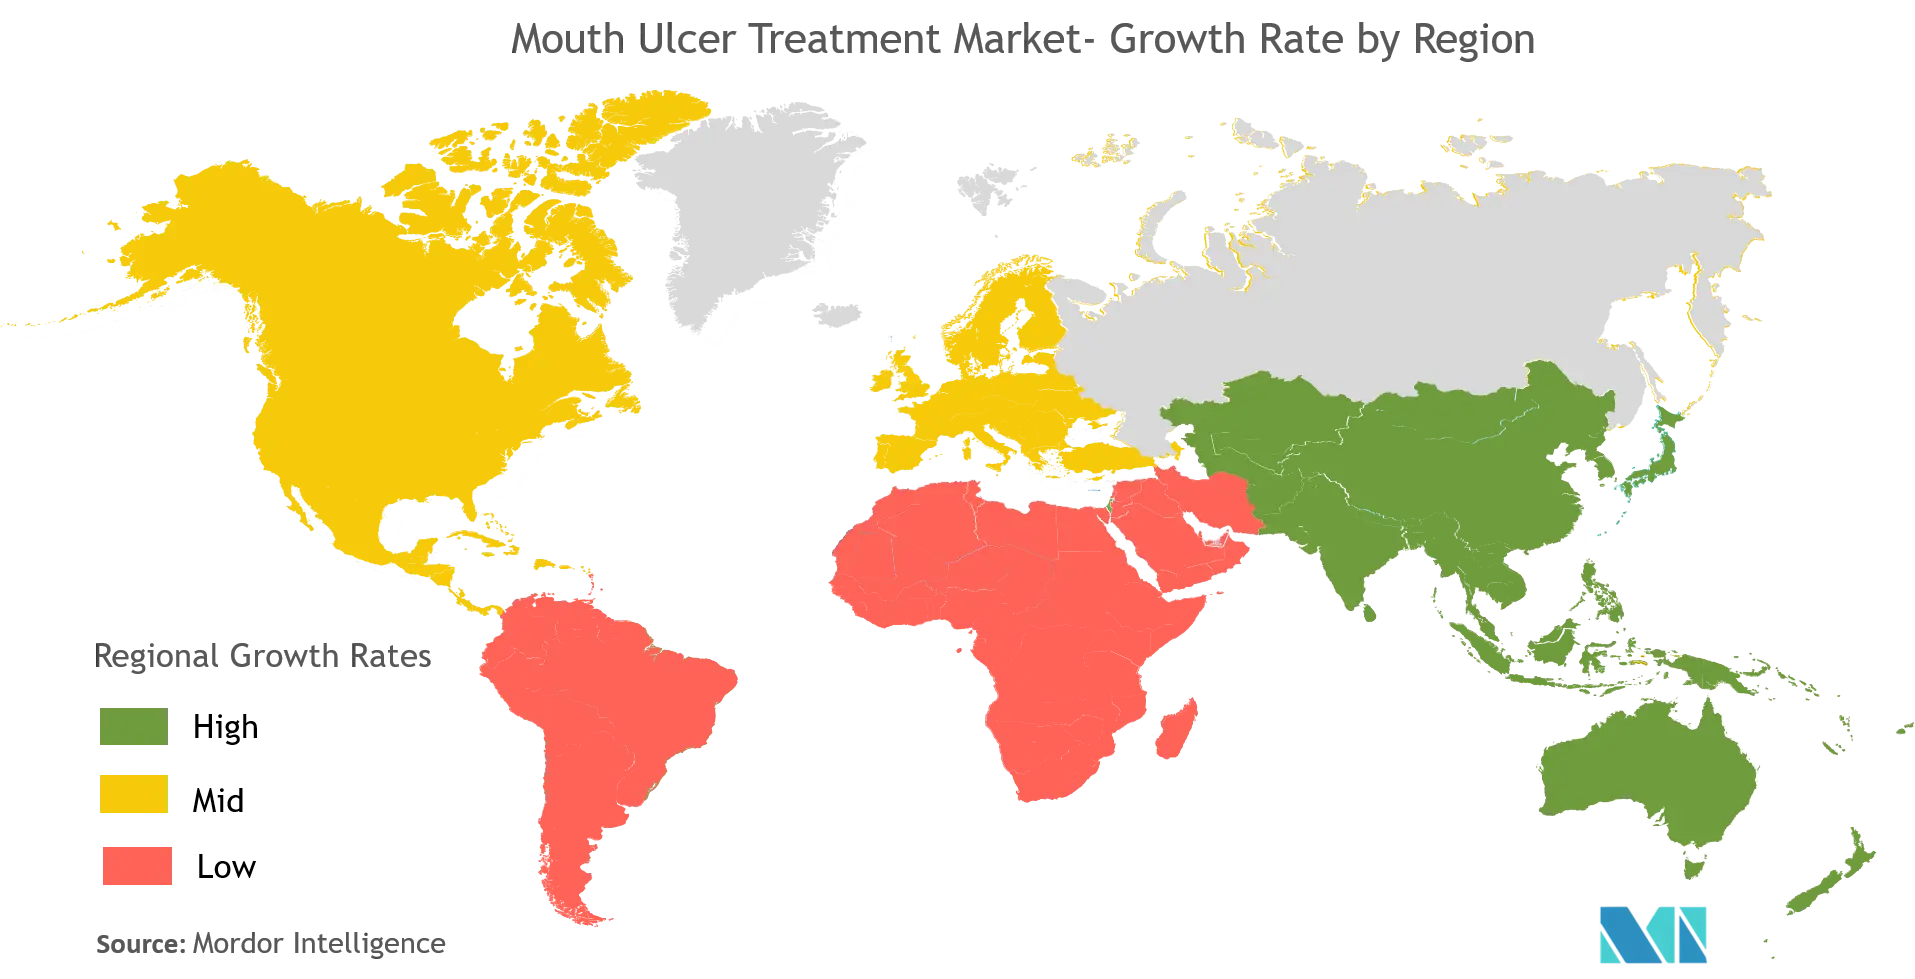 lichen nitidus treatment market growth